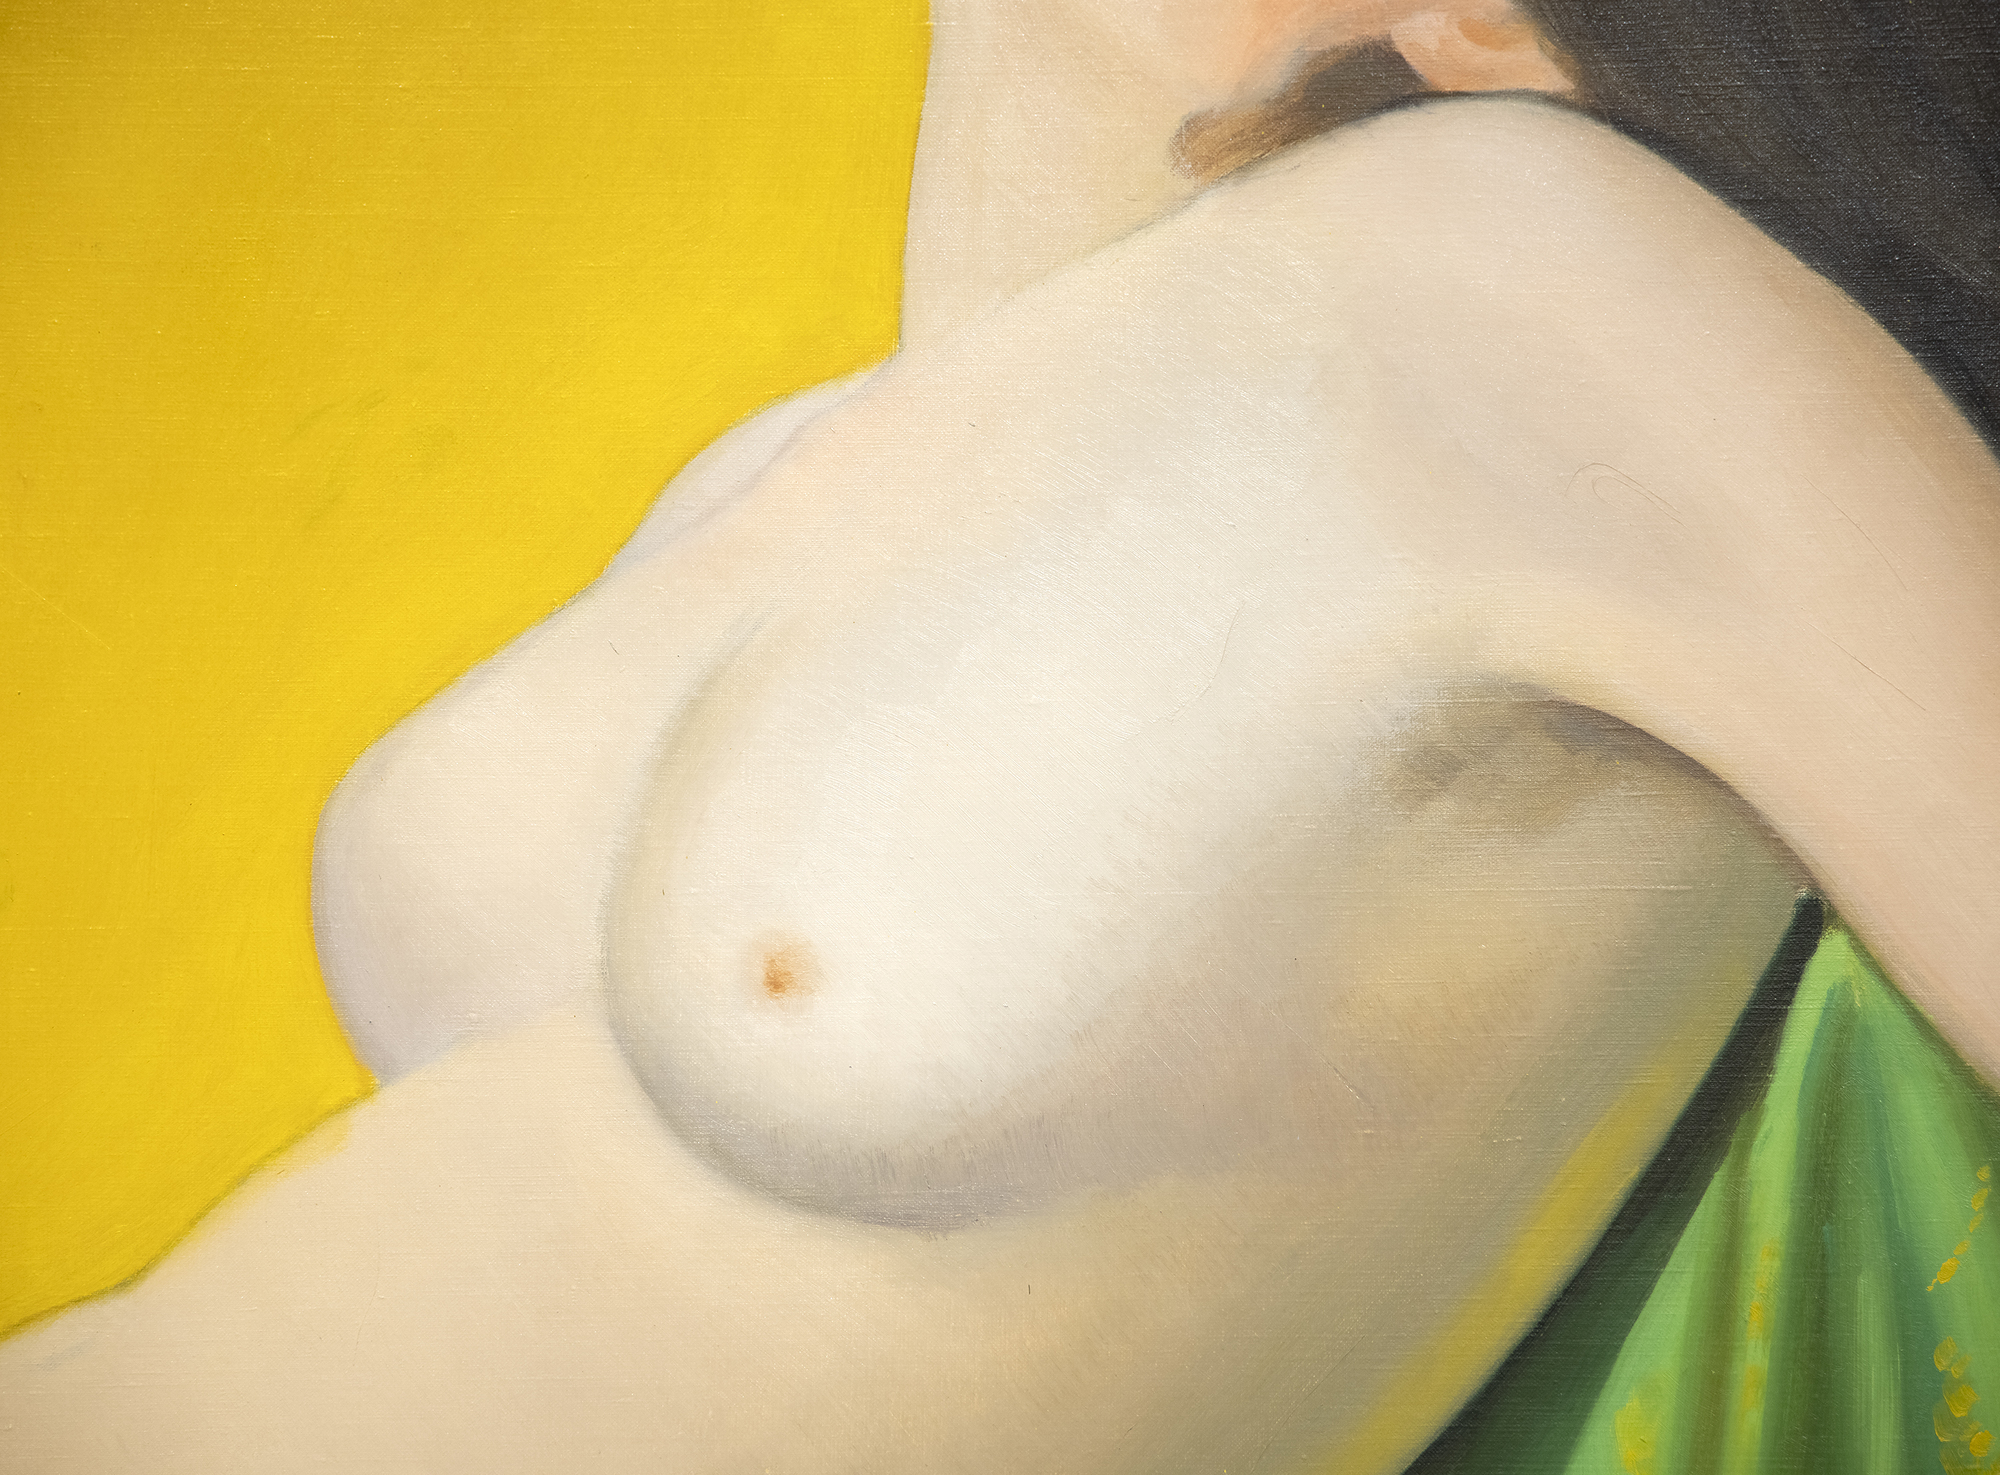 JOSEPH STELLA - Reclining Nude - 油彩・キャンバス - 50 x 52 1/2 in.